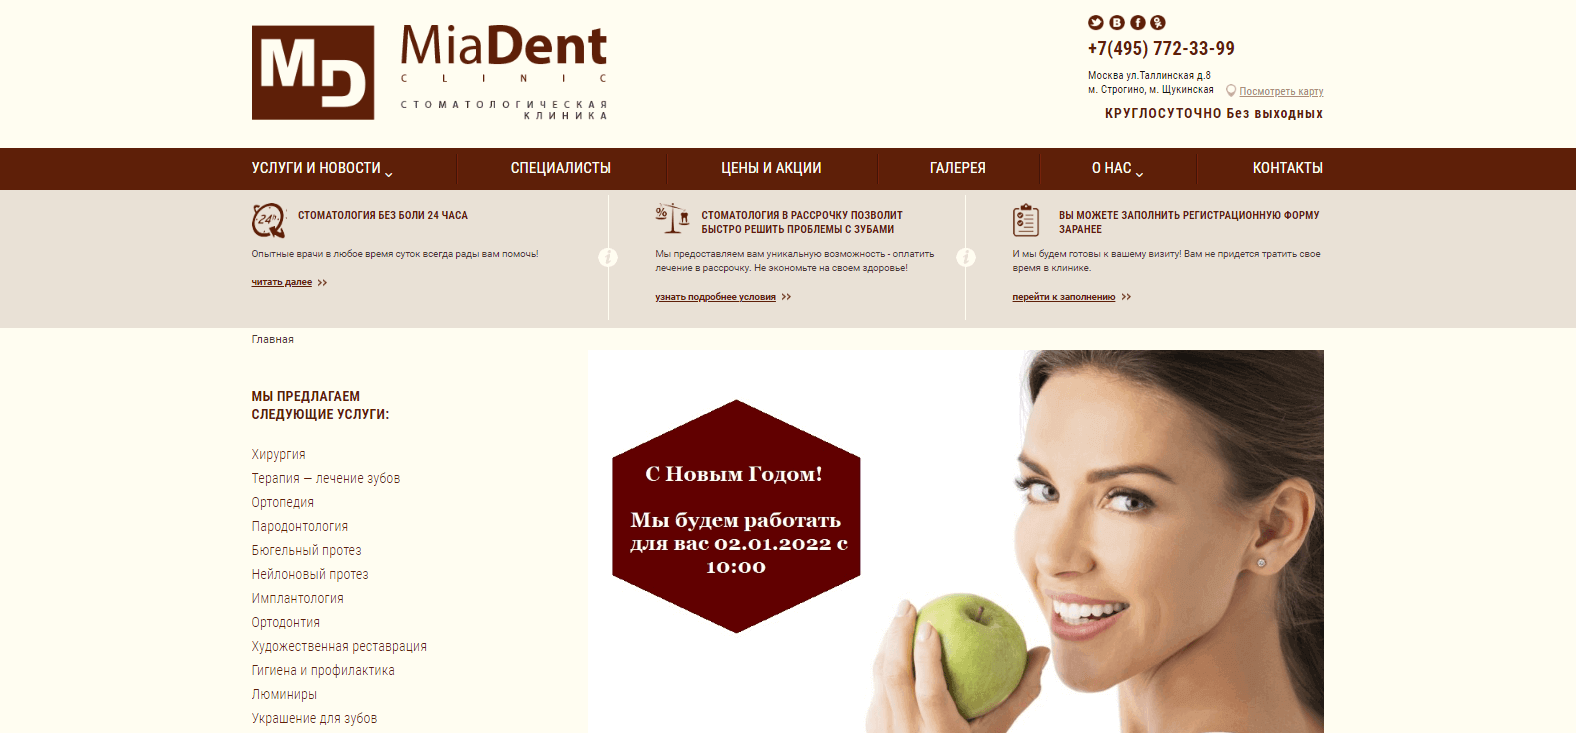 Разработка сайта-визитки стоматологической клиники MiaDent